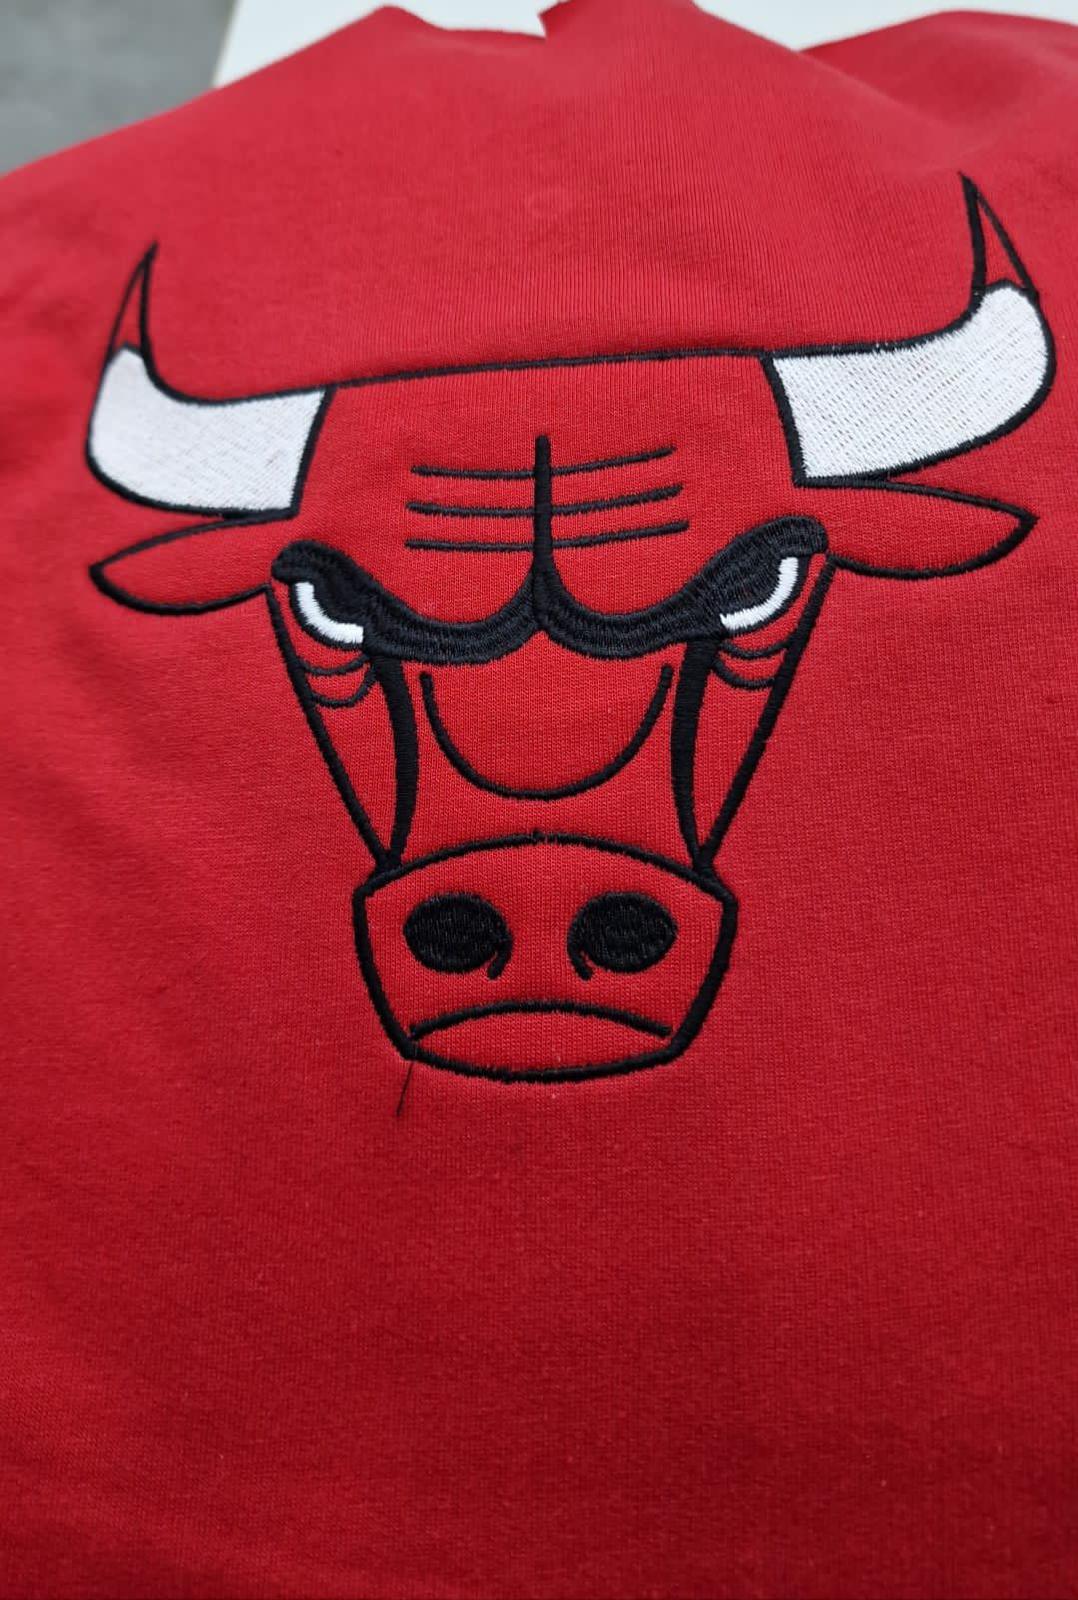 Chándal Chicago Bulls – Tienda 24 Horas